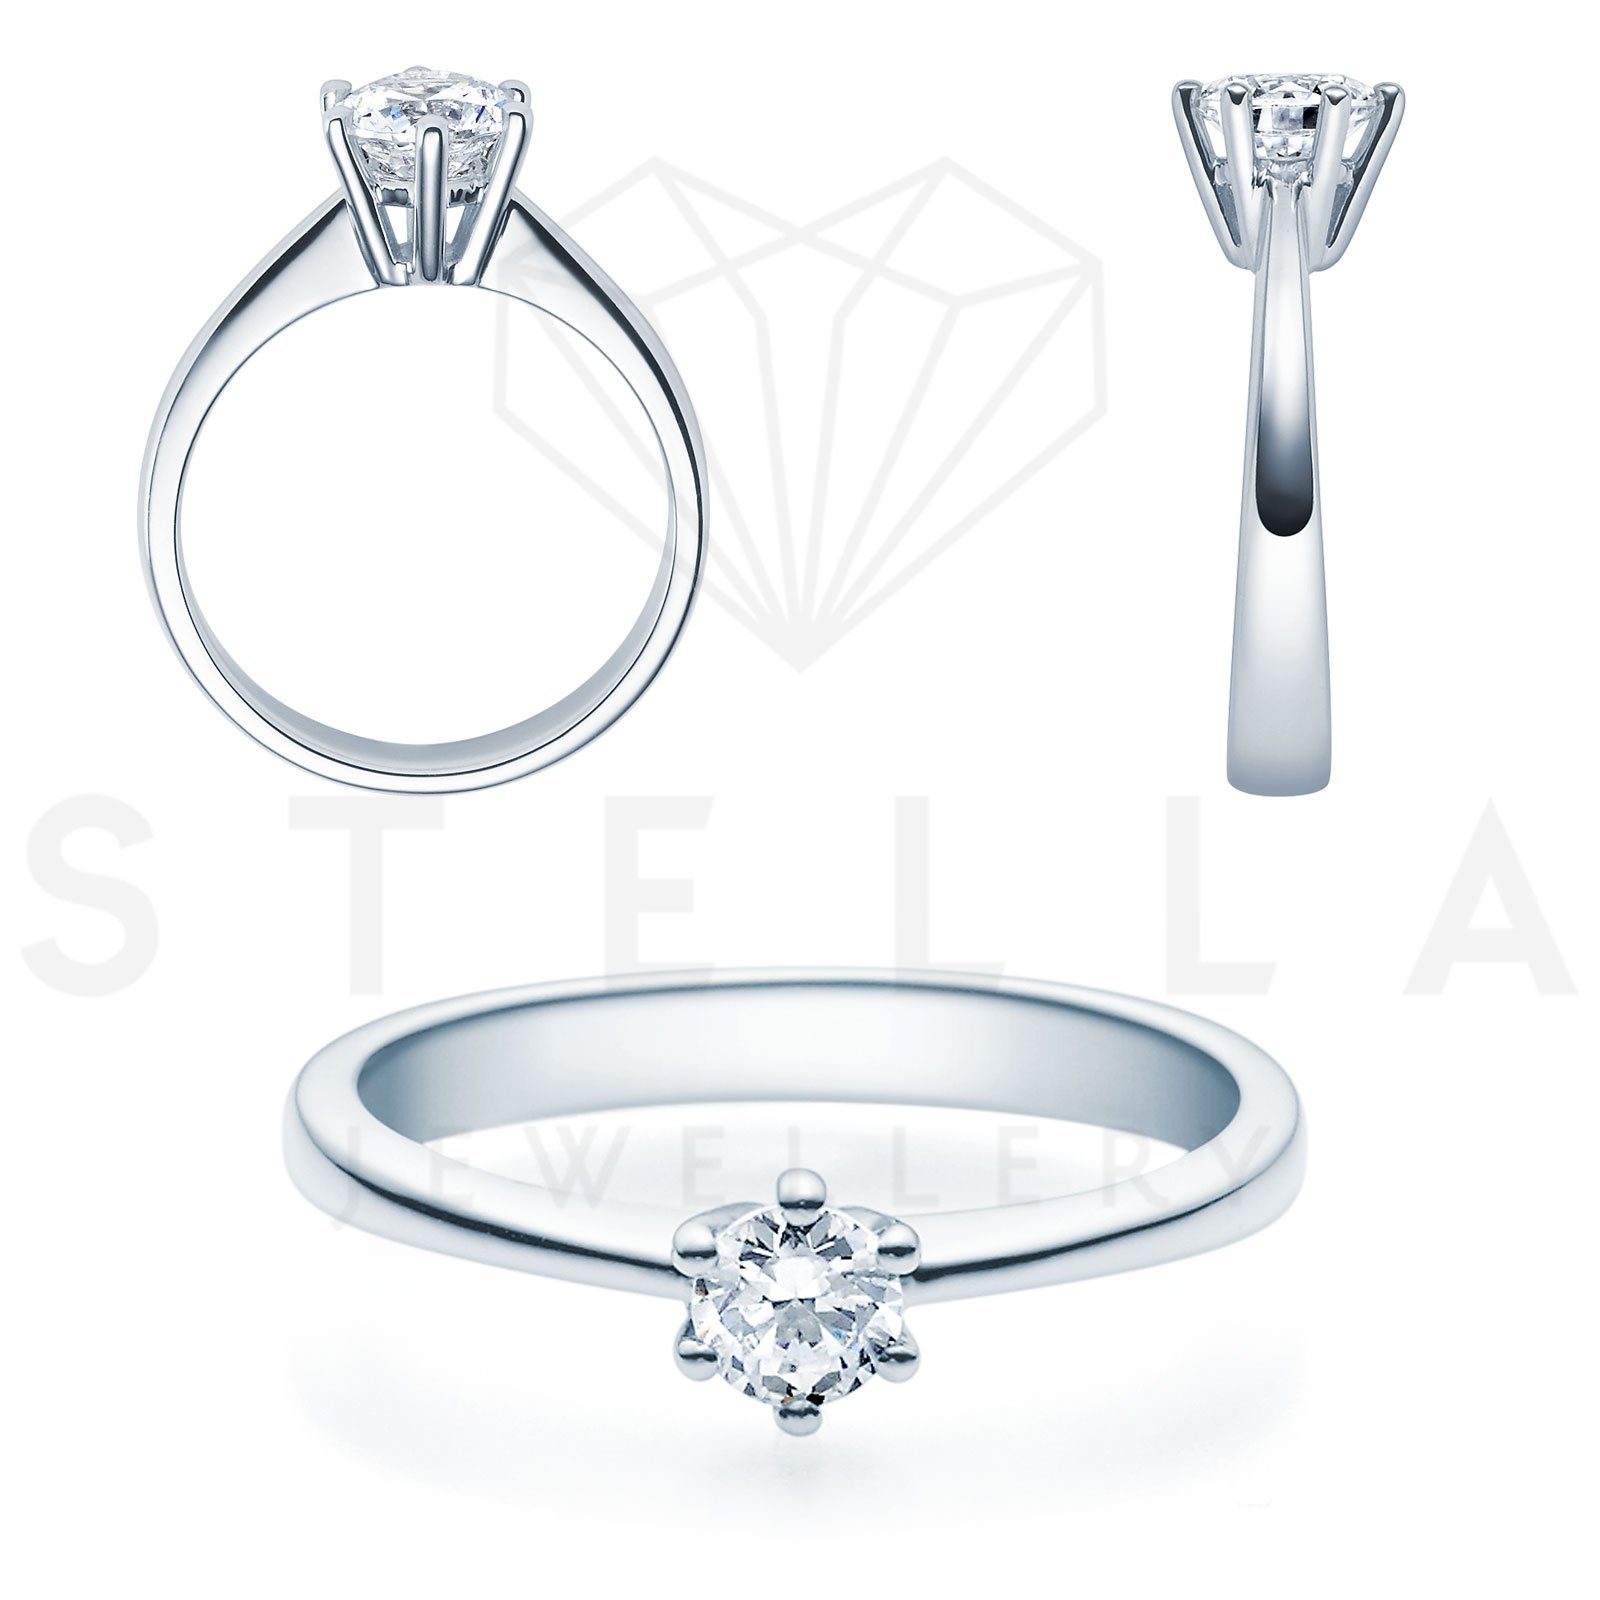 Weißgold (inkl. - Gr. 585er Stella-Jewellery Diamant Verlobungsring Brillant Etui), Verlobungsring mit - 0,35ct. 54 Poliert